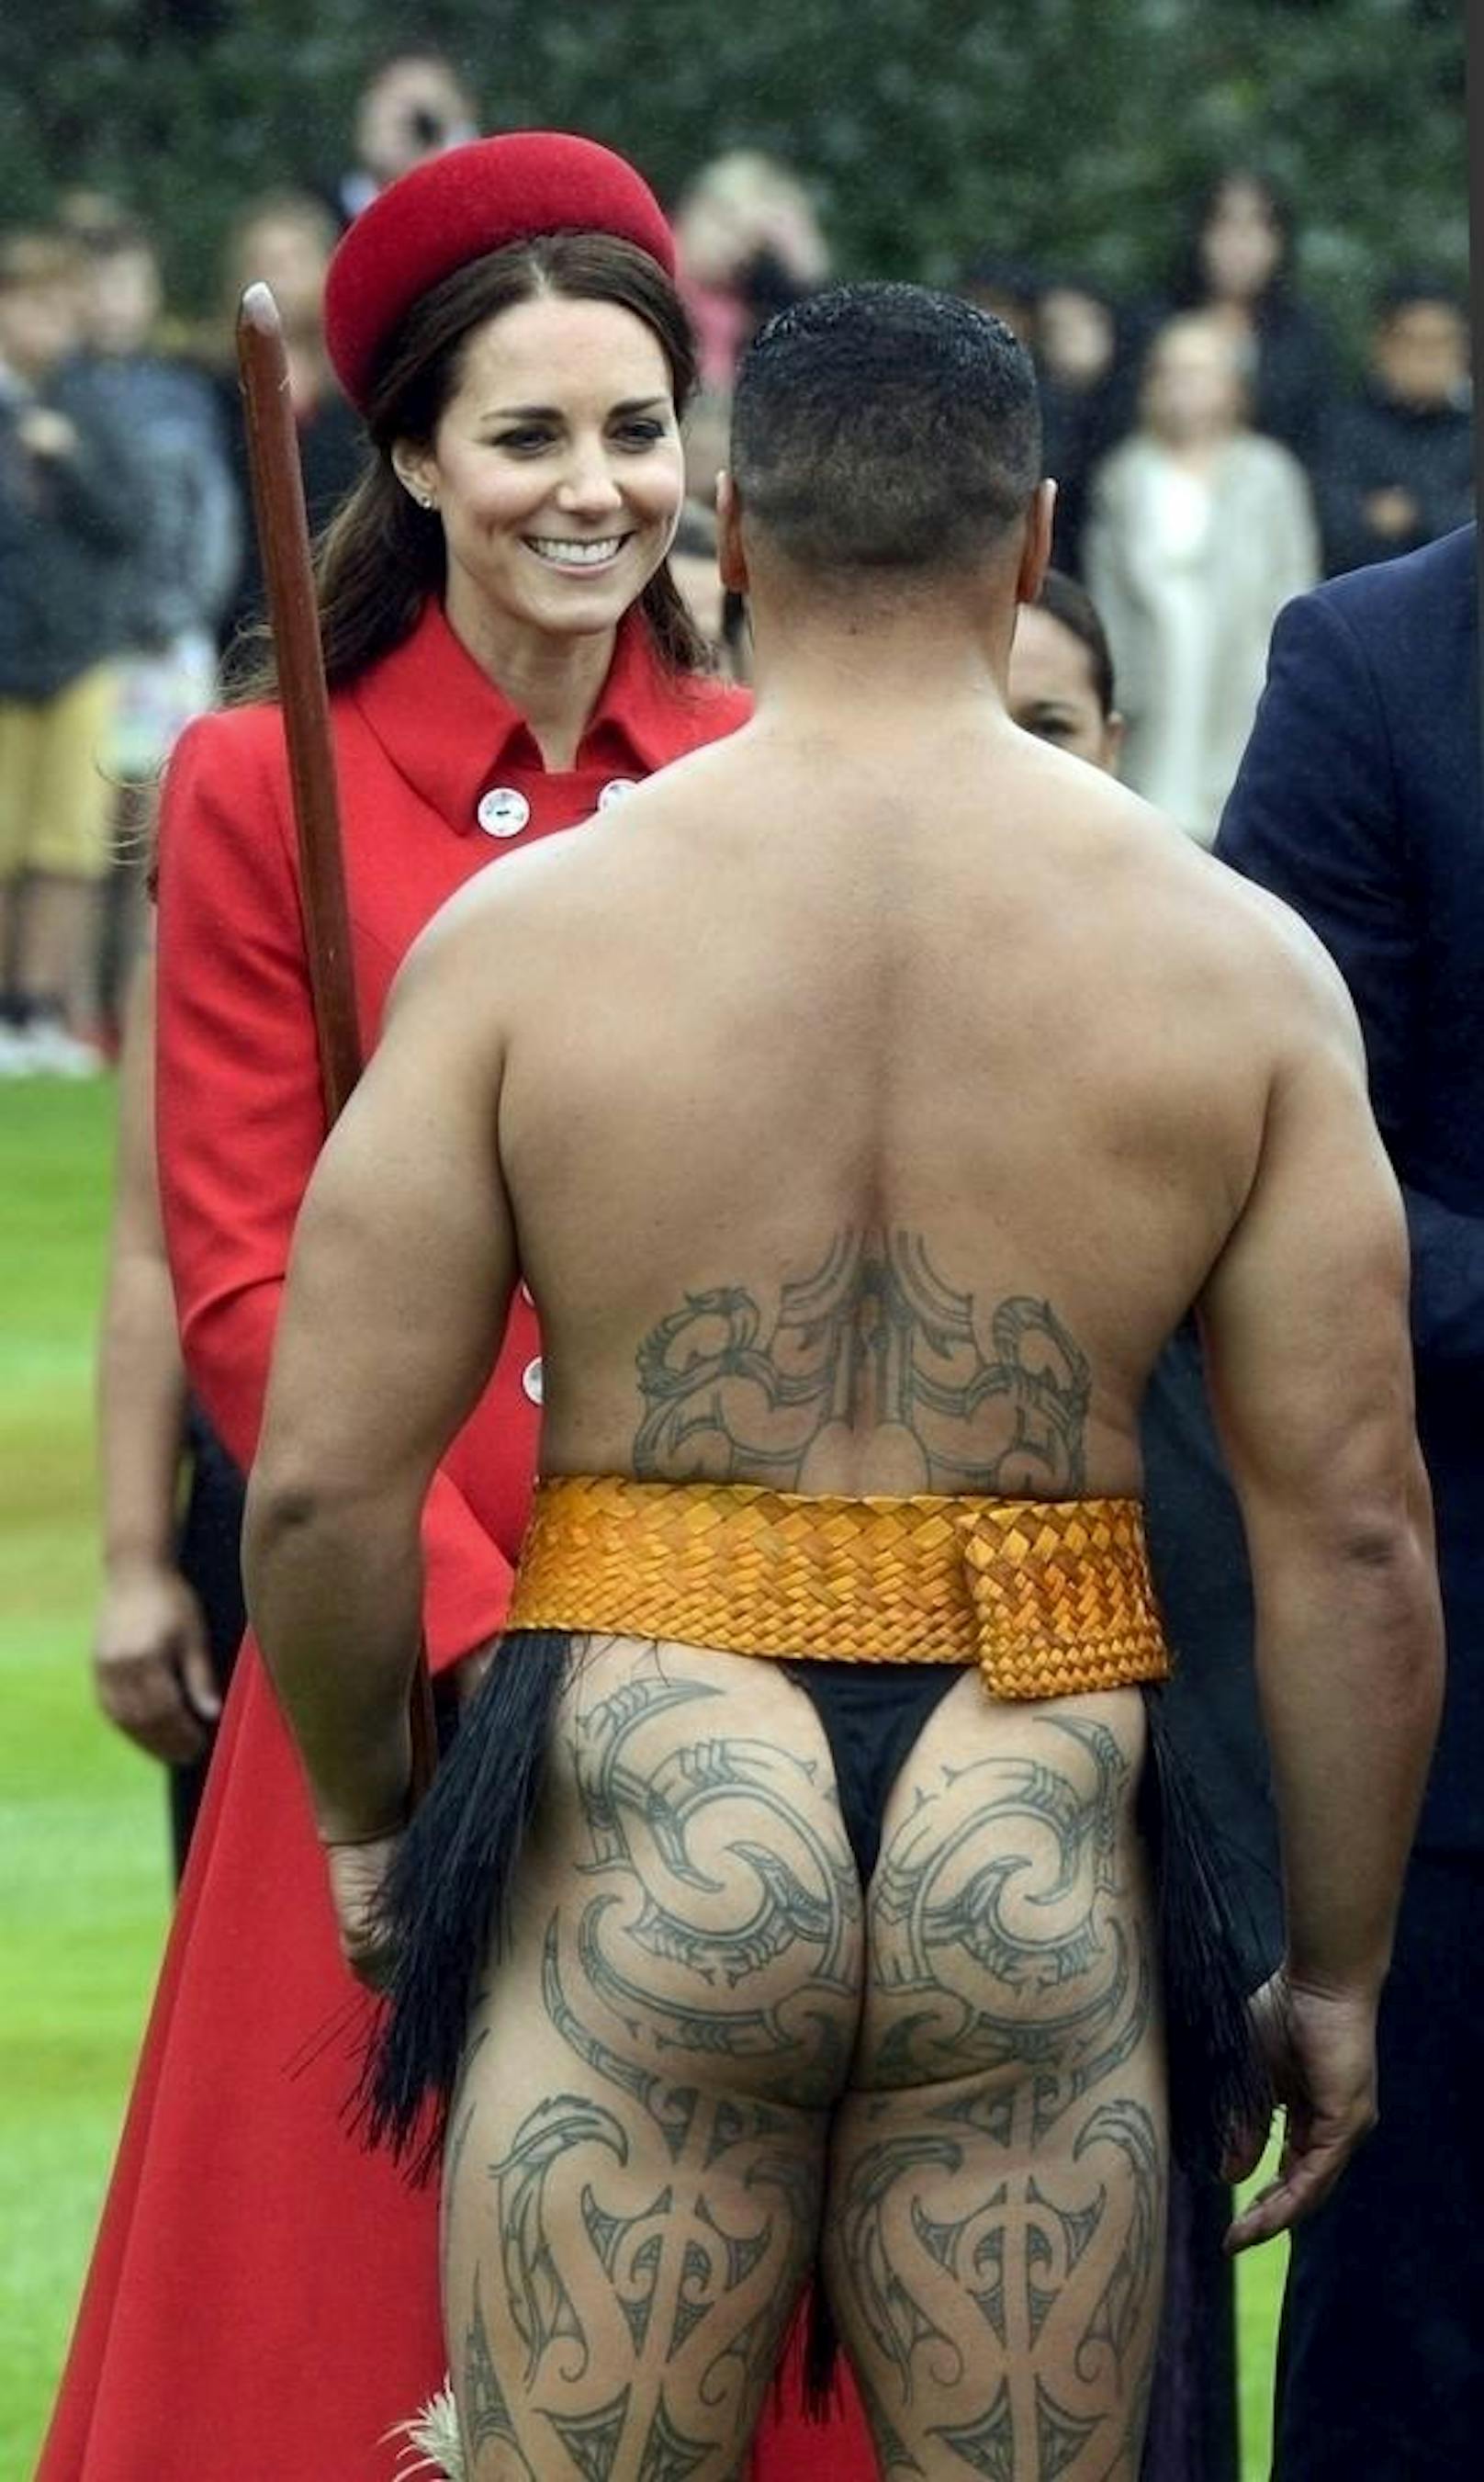 Als Herzogin muss man immer die Haltung bewahren. Aber Catherine steht hier 2014 ein Maori in traditionellen Tattoos und traditioneller Kleidung gegenüber. Trüge er Lederhosen, wäre ihr Lächeln wohl entspannter.